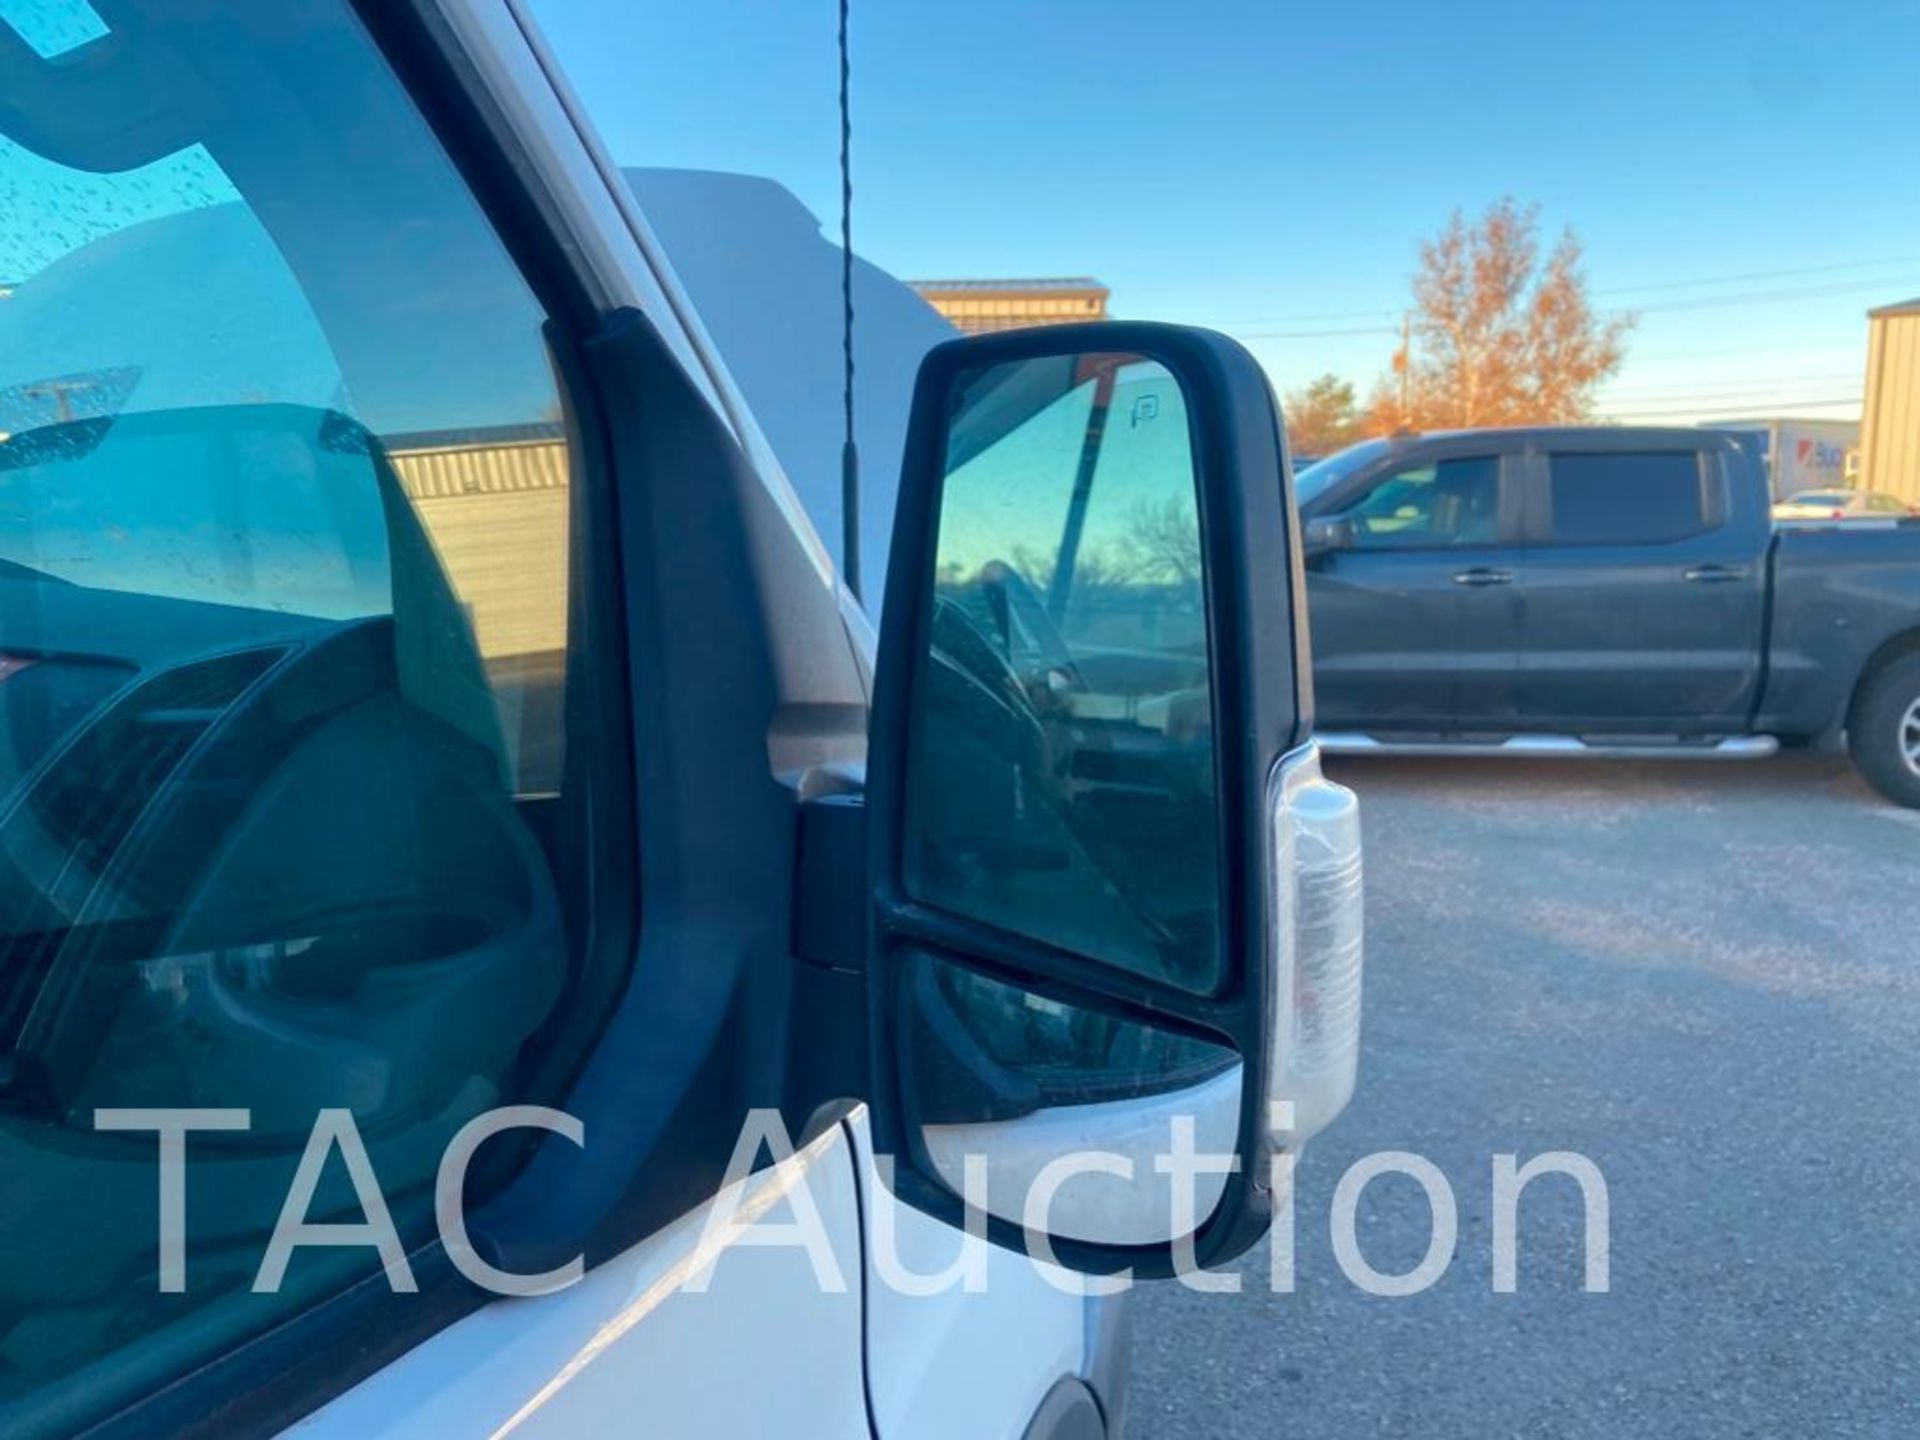 2018 Ford Transit 150 Cargo Van - Image 33 of 82